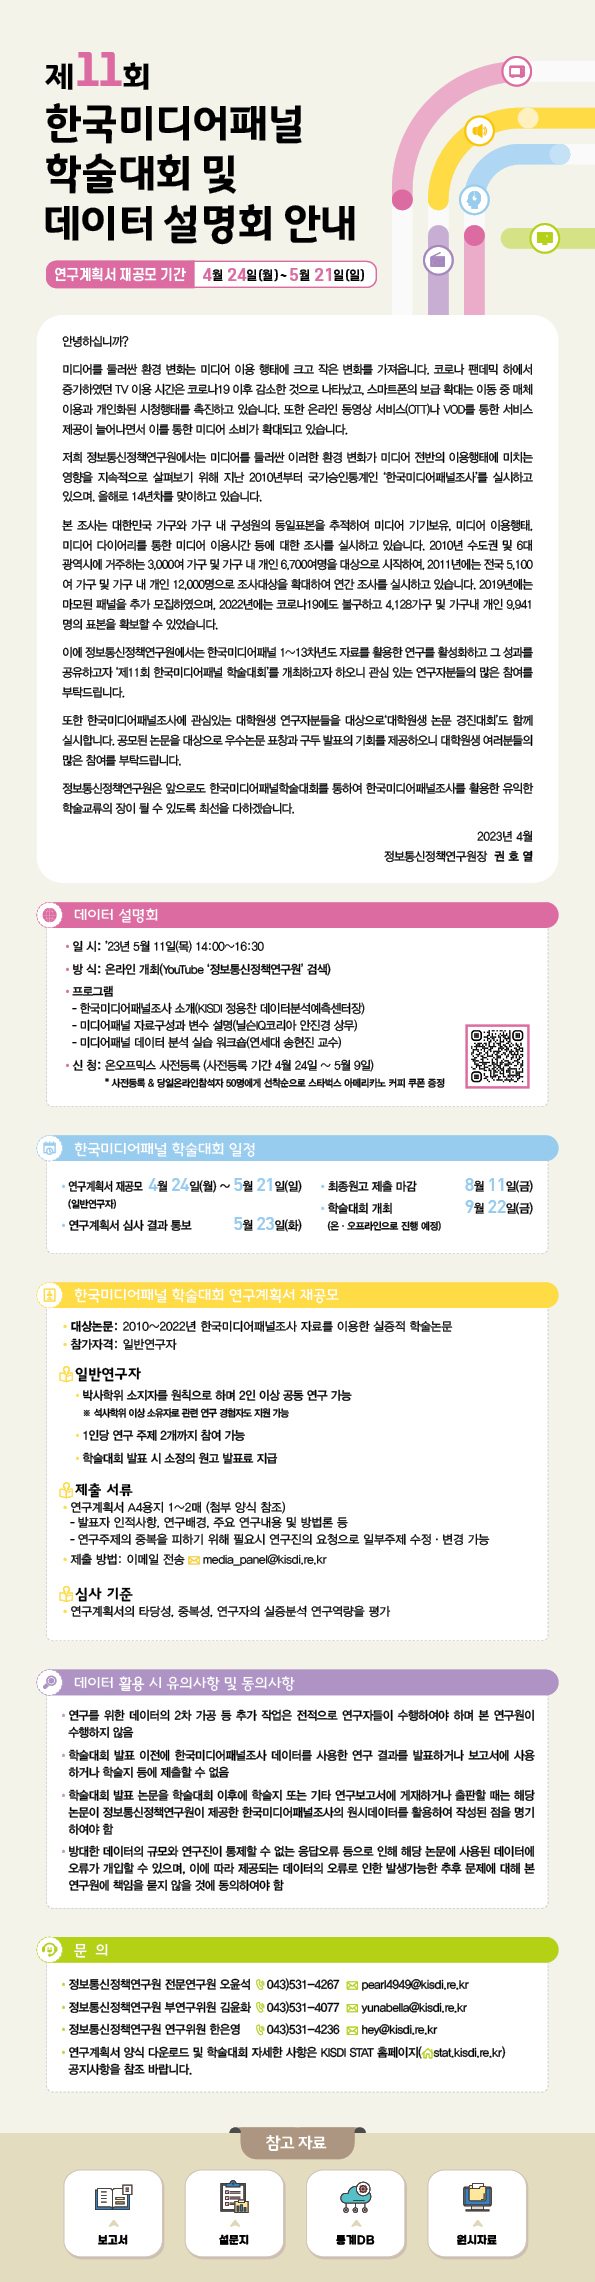 제11회 한국미디어패널 학술대회 및 데이터 설명회 안내(하단 내용 참조)